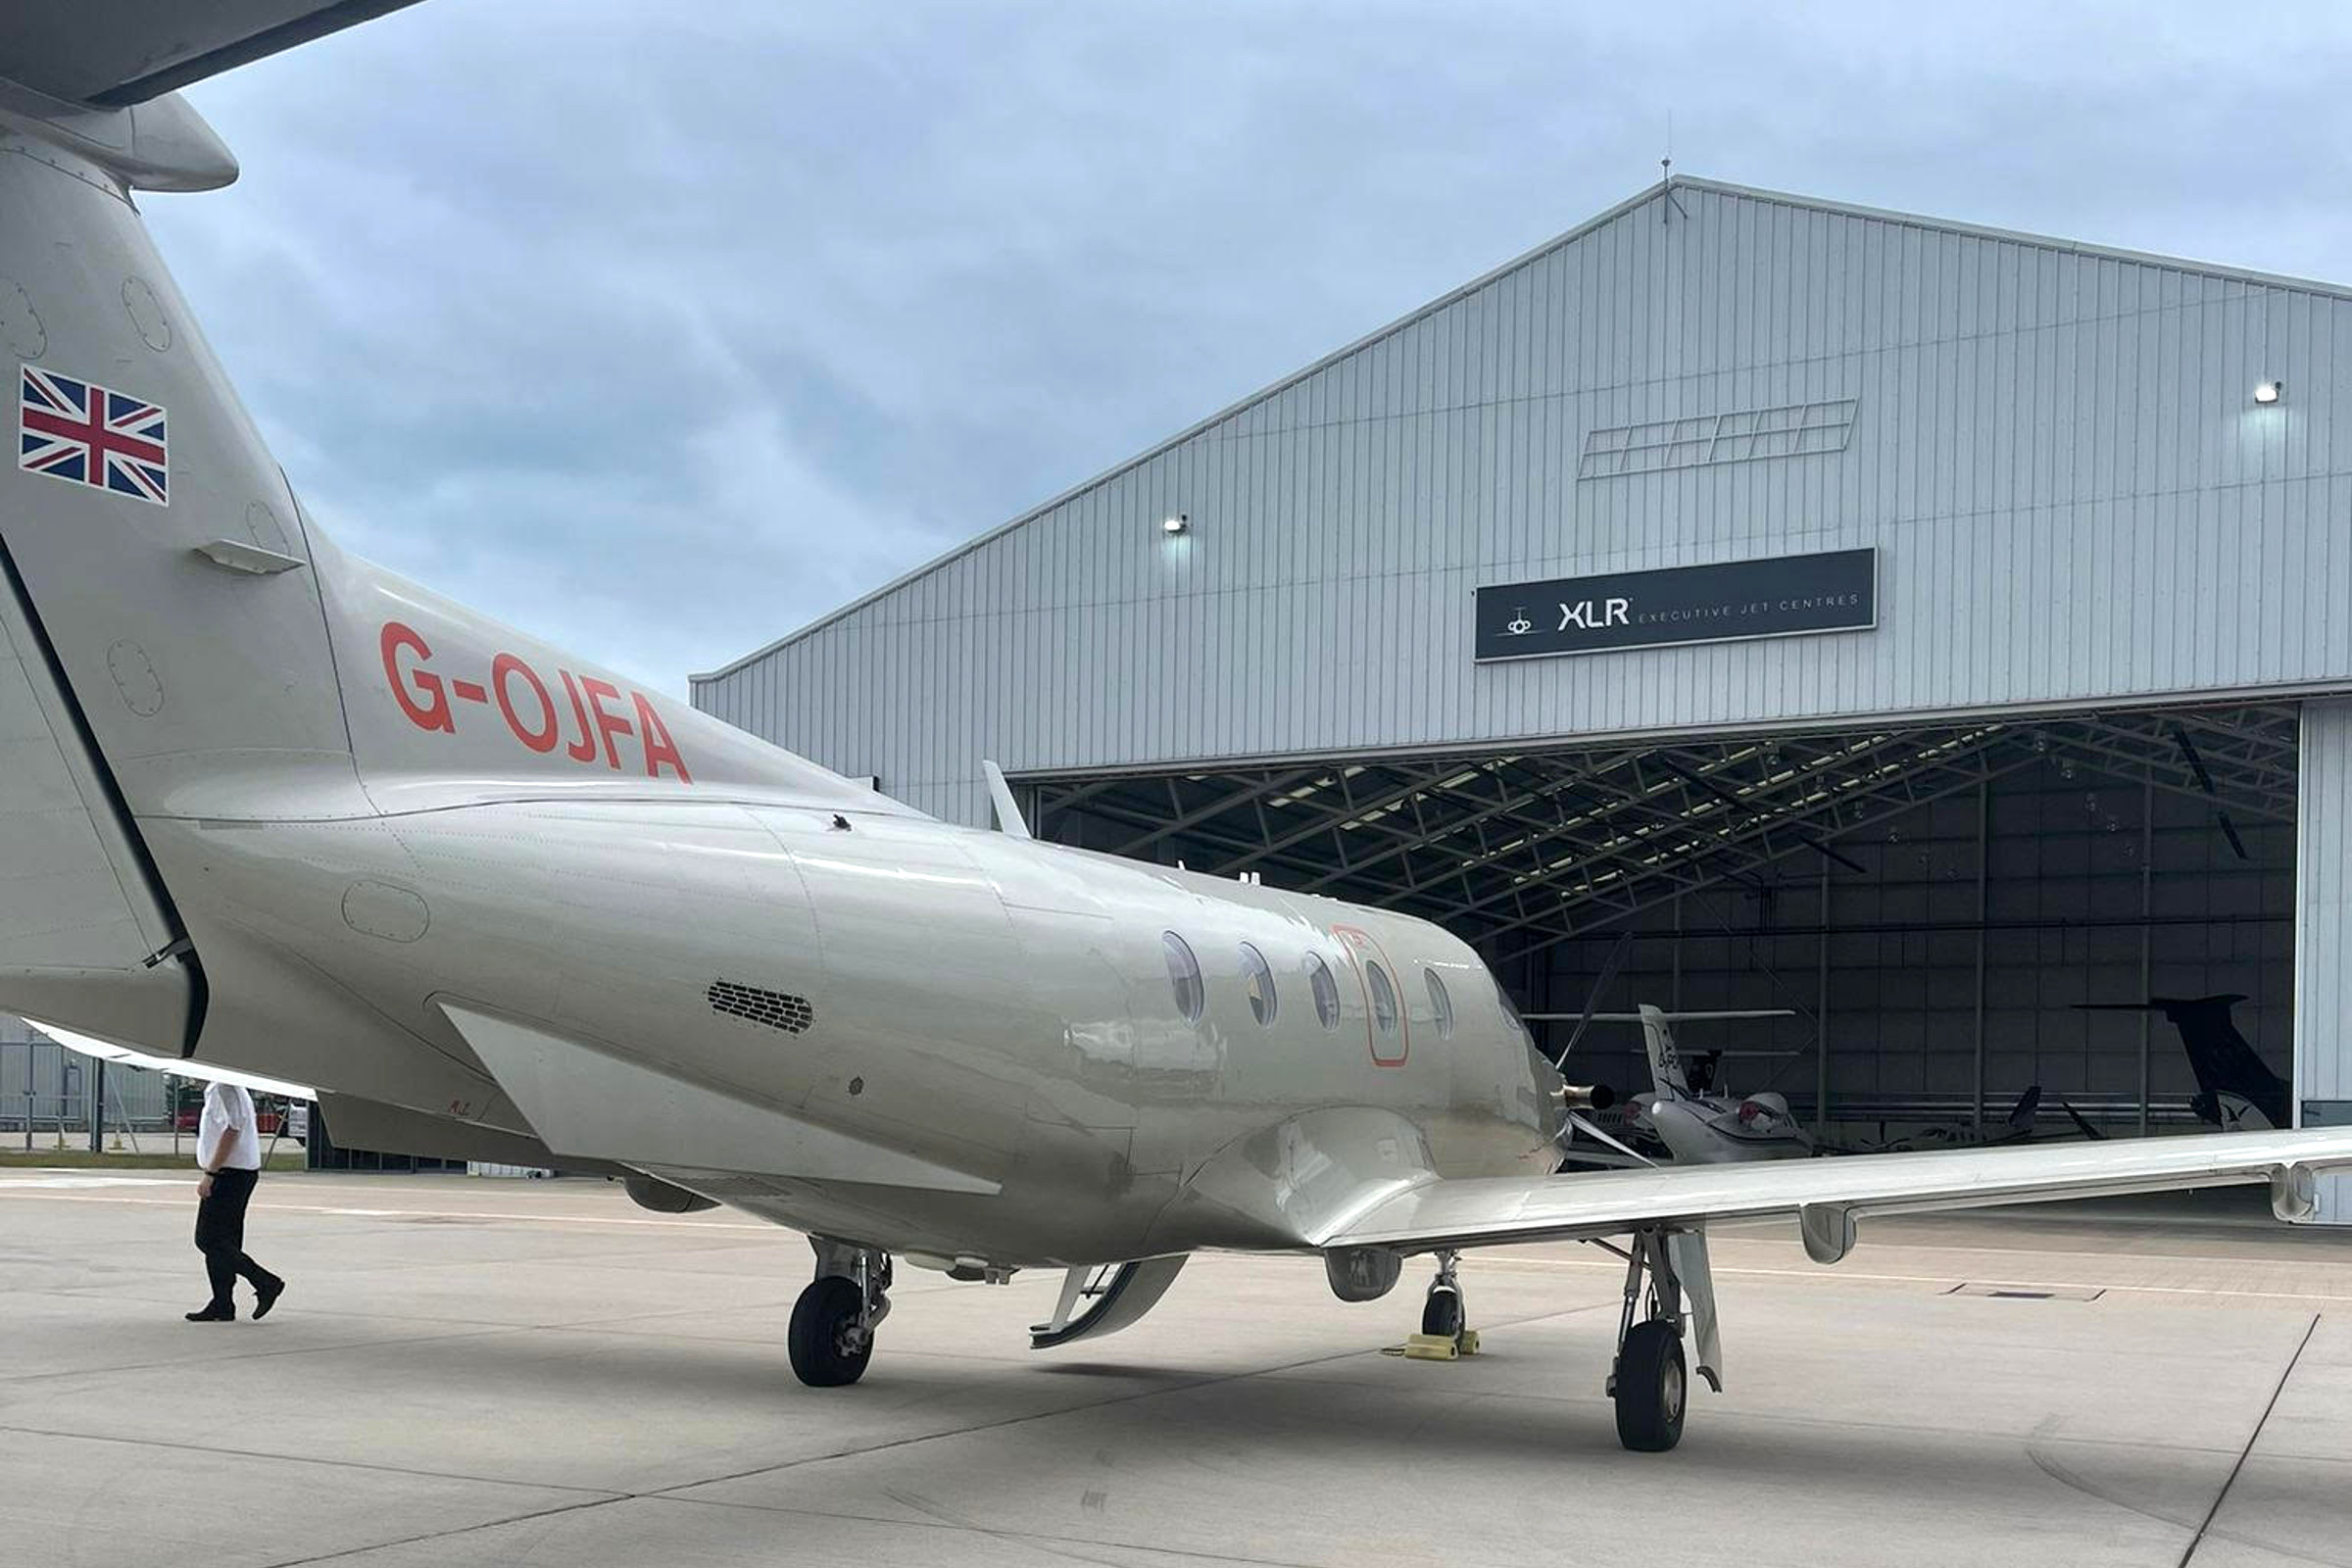 Liverpool John Lennon’s Ravenair partners with Jetfly for UK flying